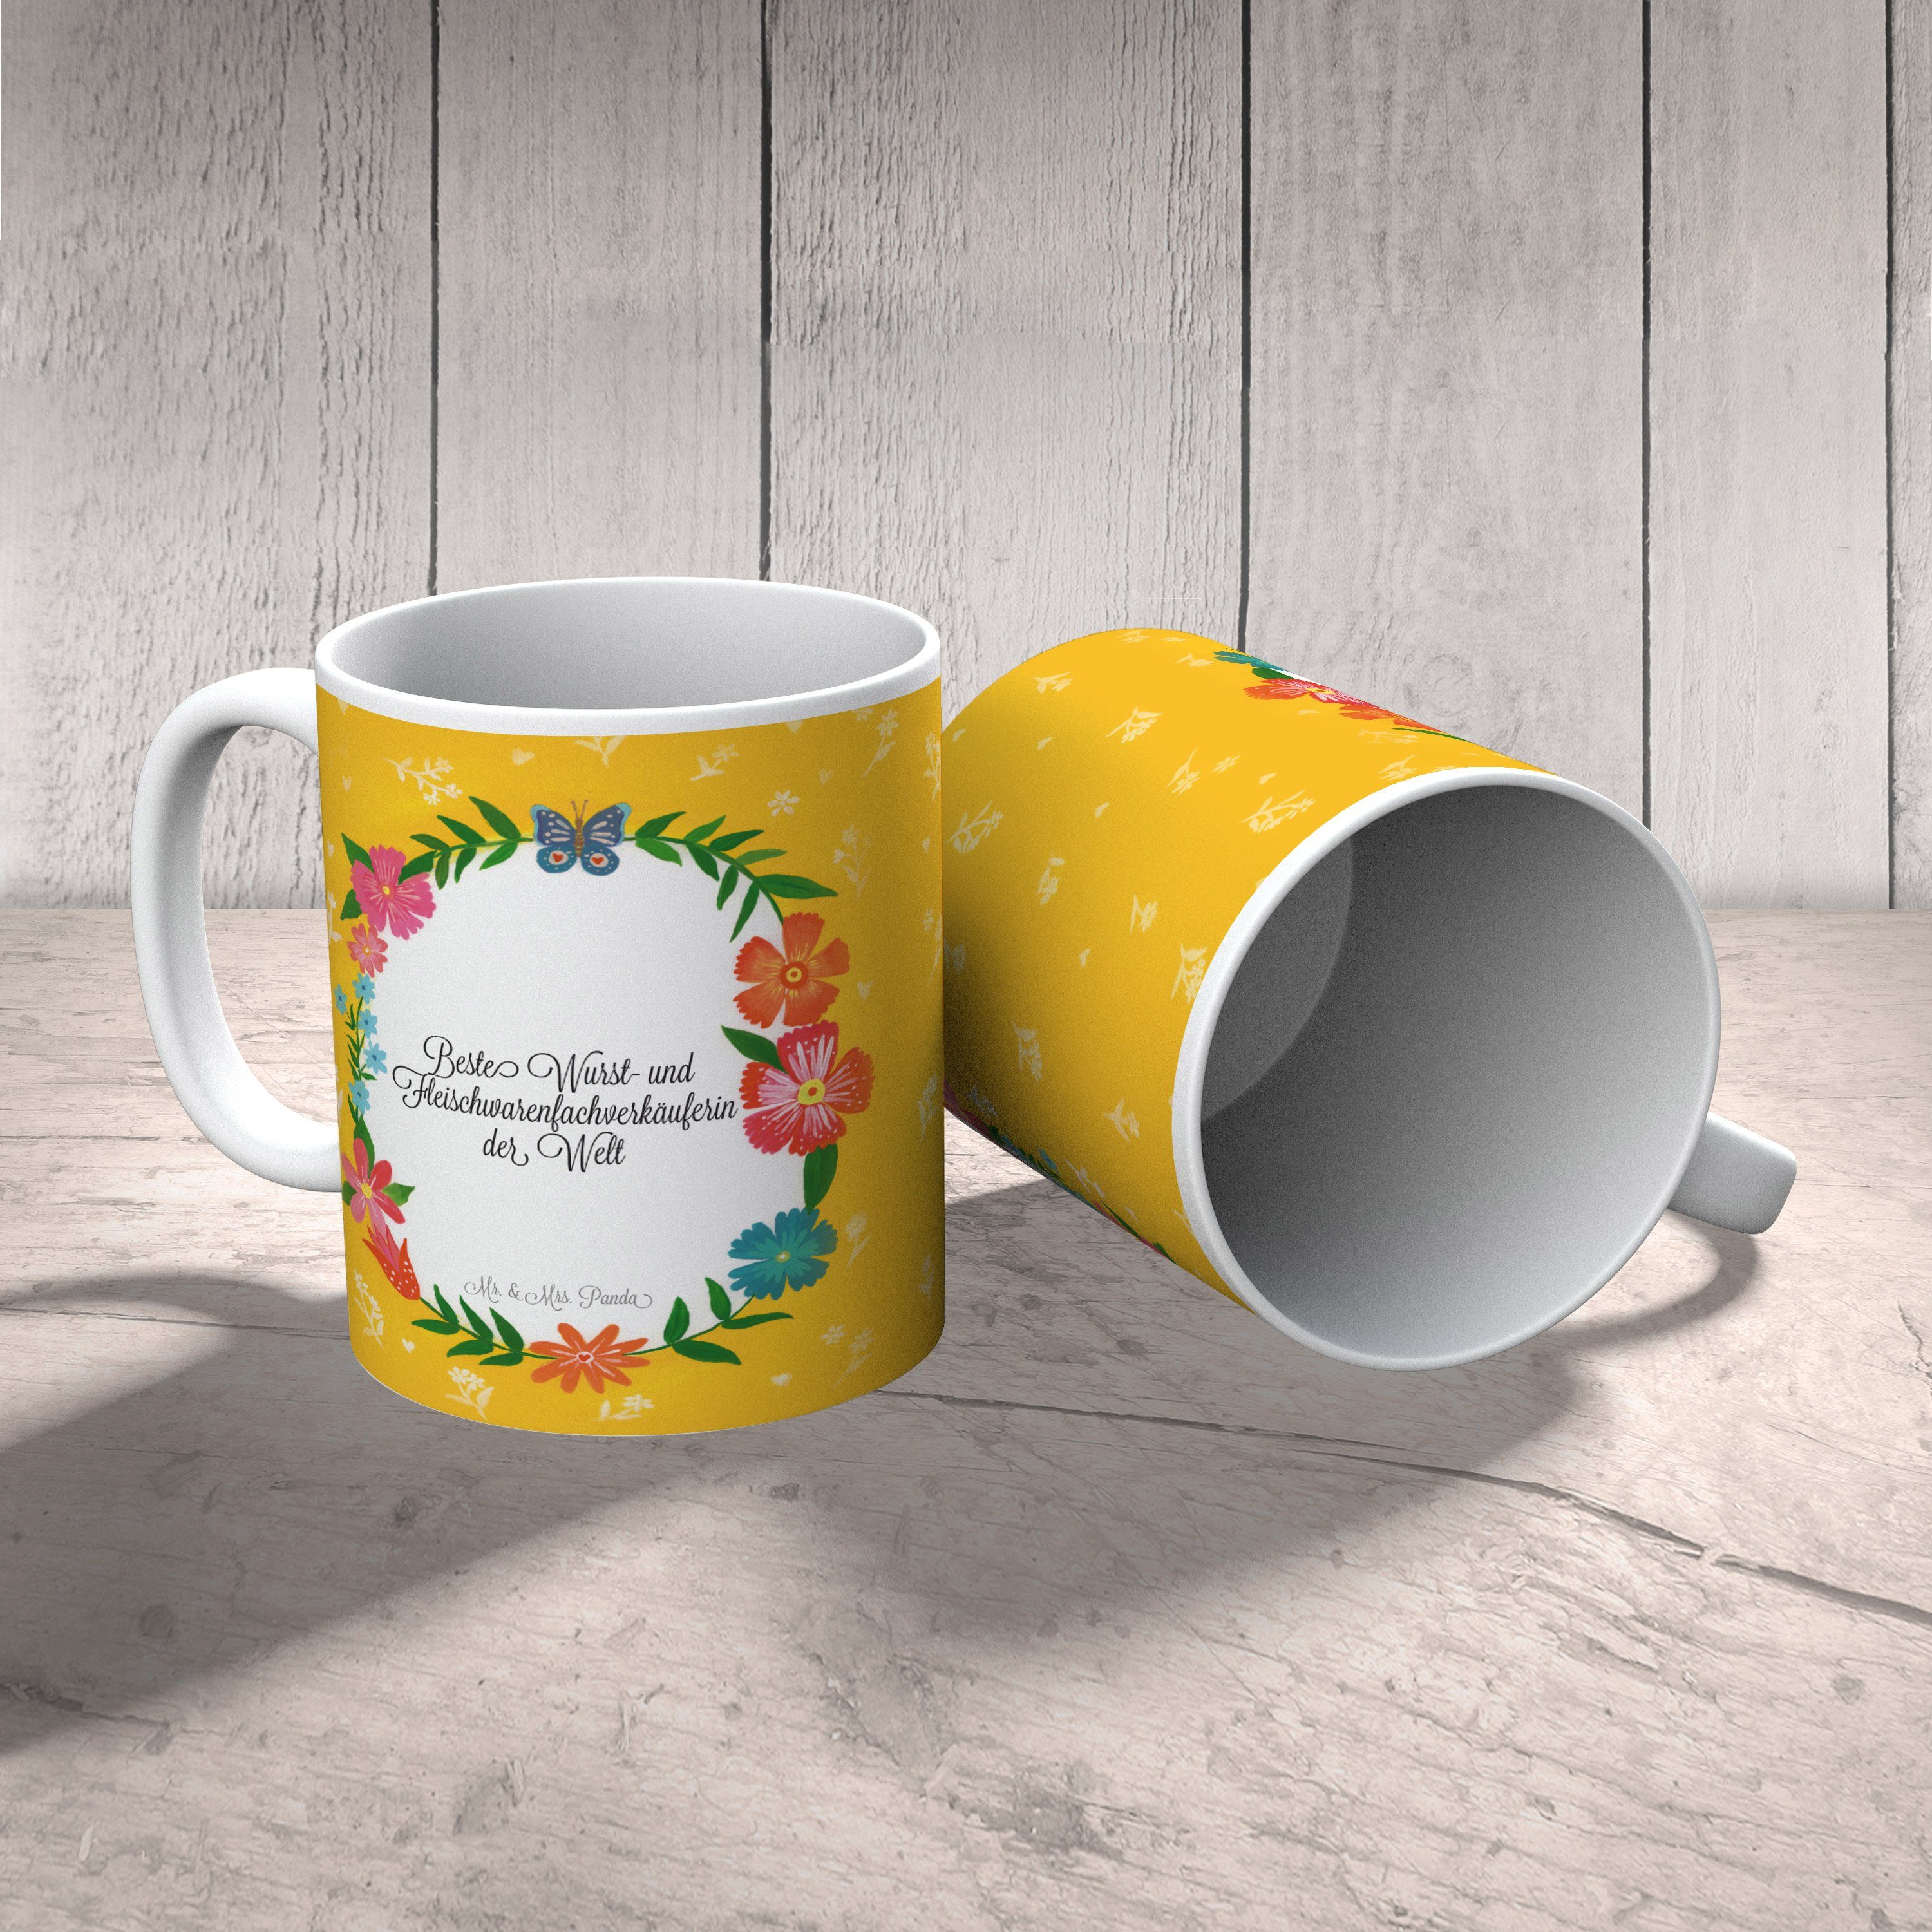 Mr. & Mrs. Panda und Geschenk, Kaffe, Wurst- Fleischwarenfachverkäuferin - Gratulation, Keramik Tasse